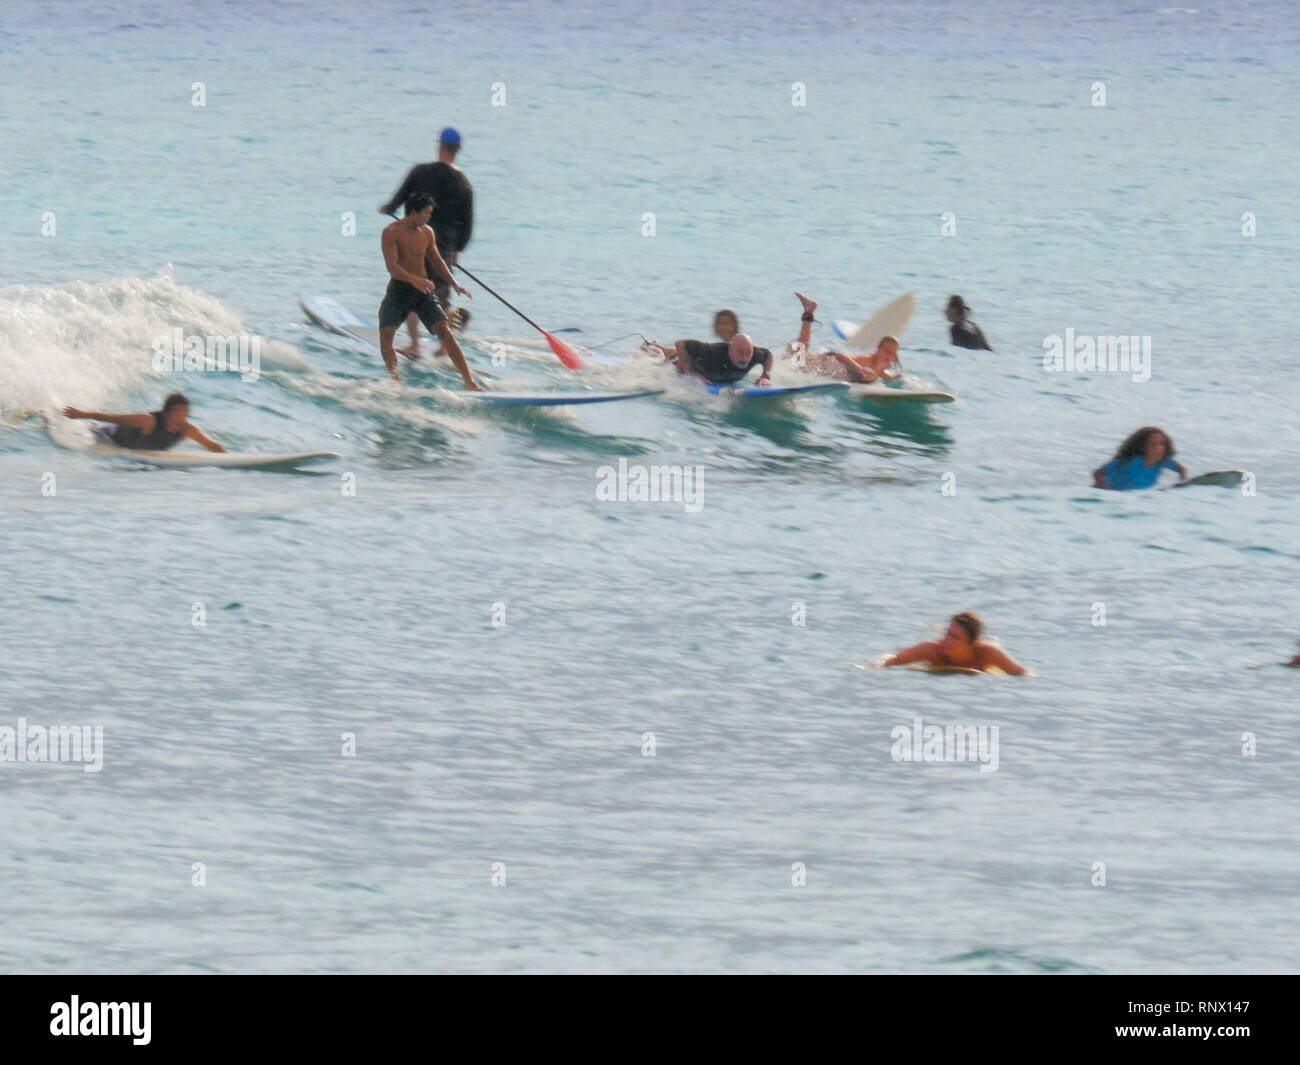 WAIKIKI, UNITED STATES OF AMERICA - 9 août 2015 : une foule de baigneurs et surfeurs de Waikiki beach Banque D'Images